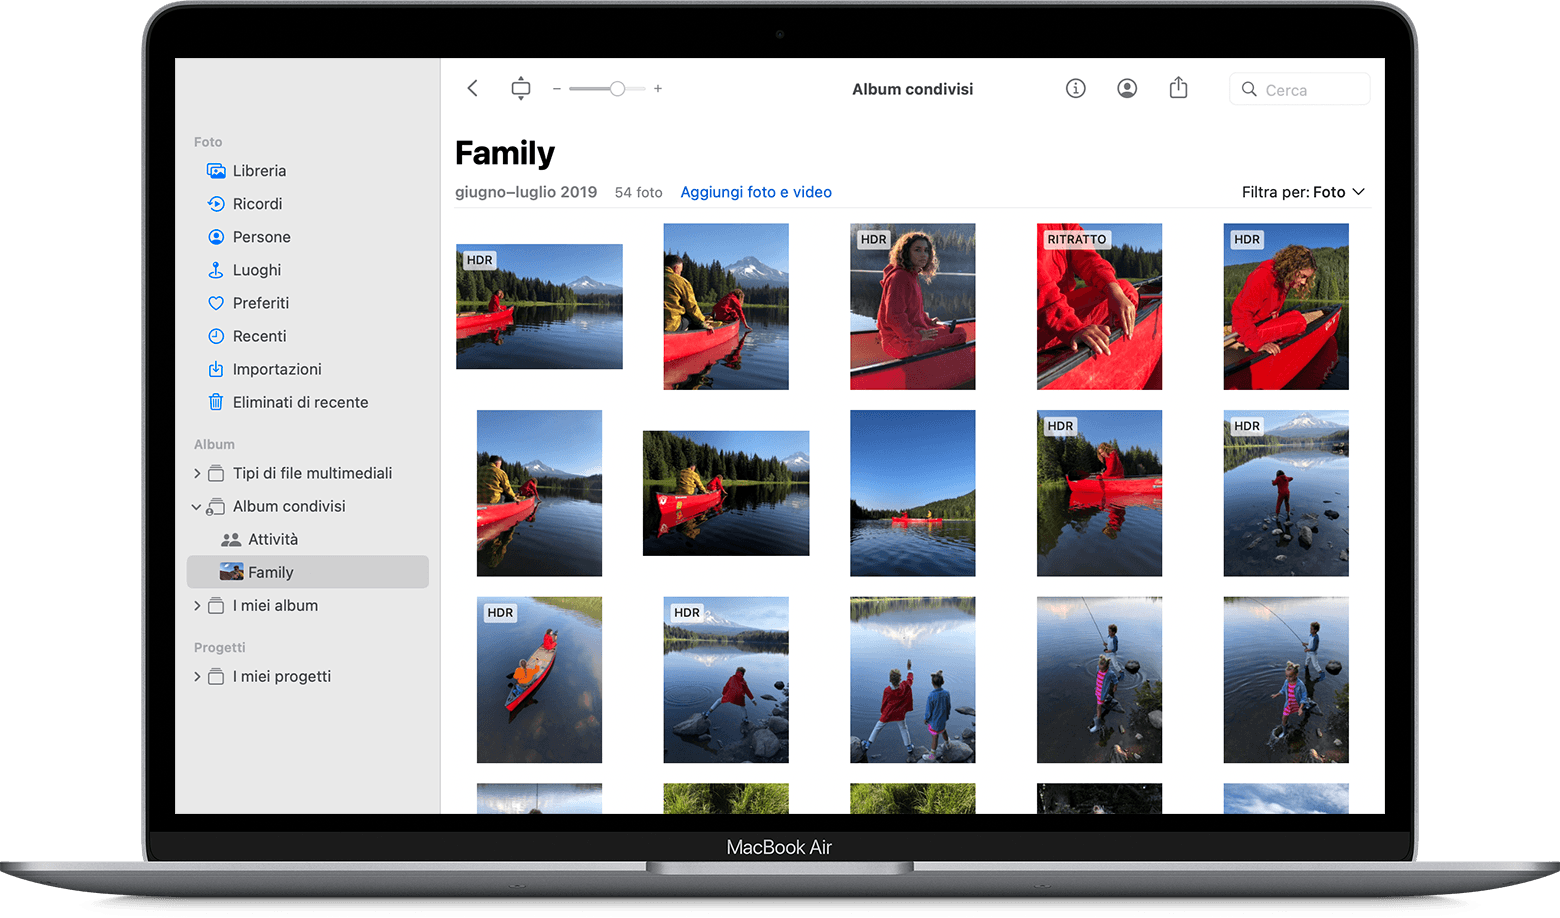 MacBook Air con l'app Foto che mostra un album condiviso dalla famiglia